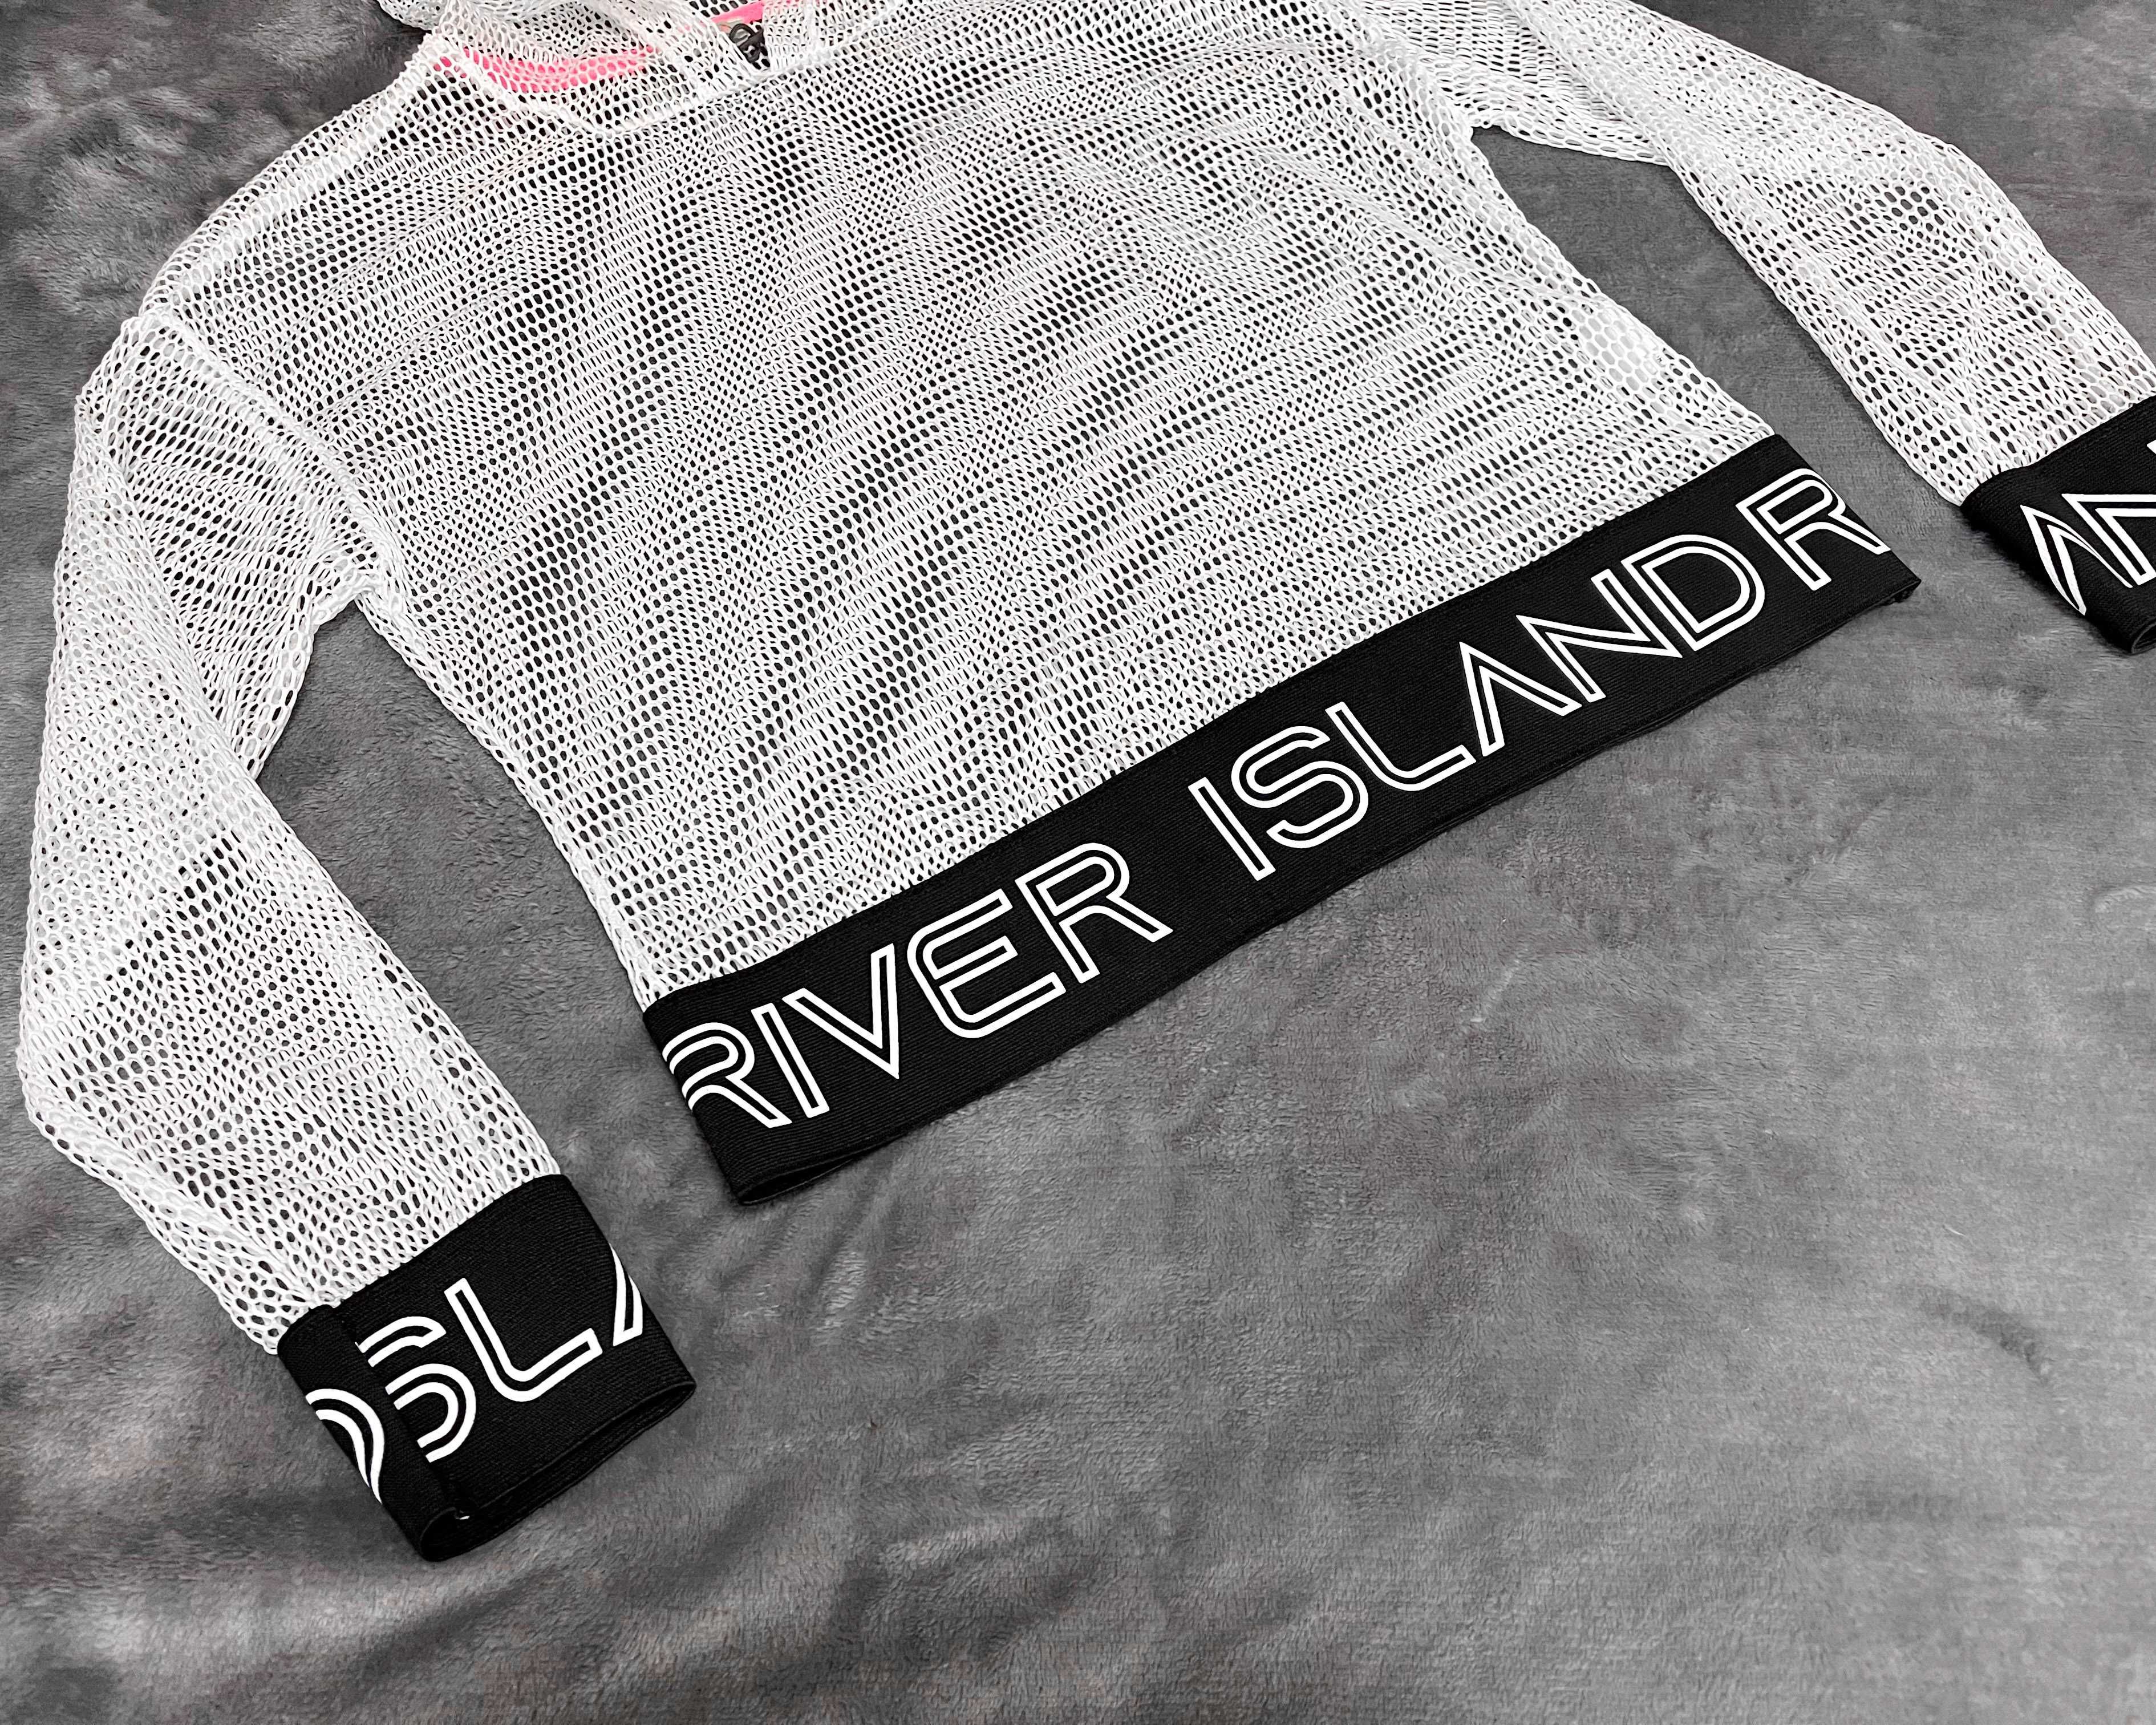 Сеточка для девочки 9-10 лет River Island женская блуза, кофта, топ